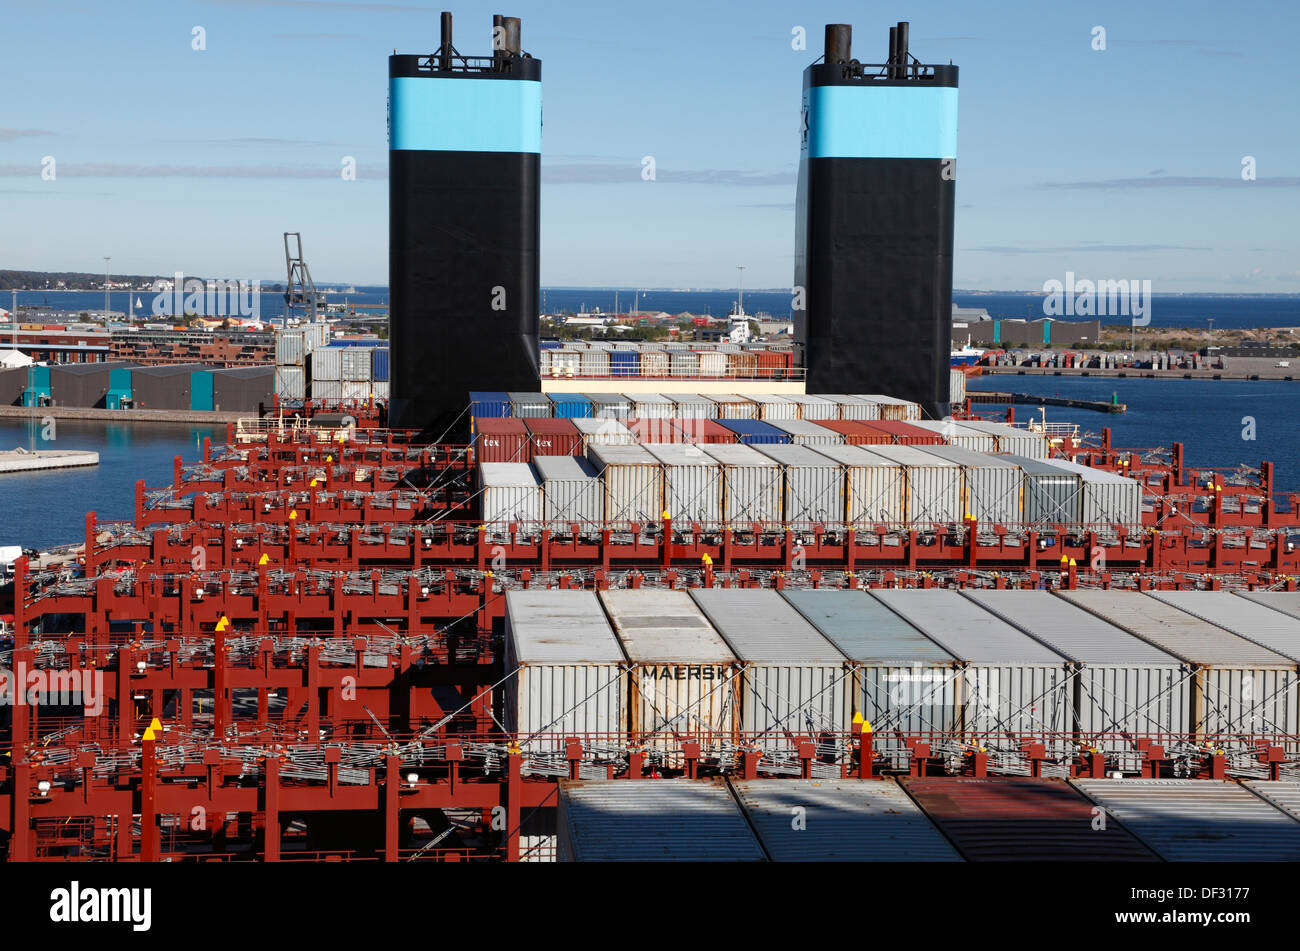 Vue sur le nord du port de Copenhague, des conteneurs et des entonnoirs derrière la baie contenant des structures sur trois E Maersk majestueux Banque D'Images